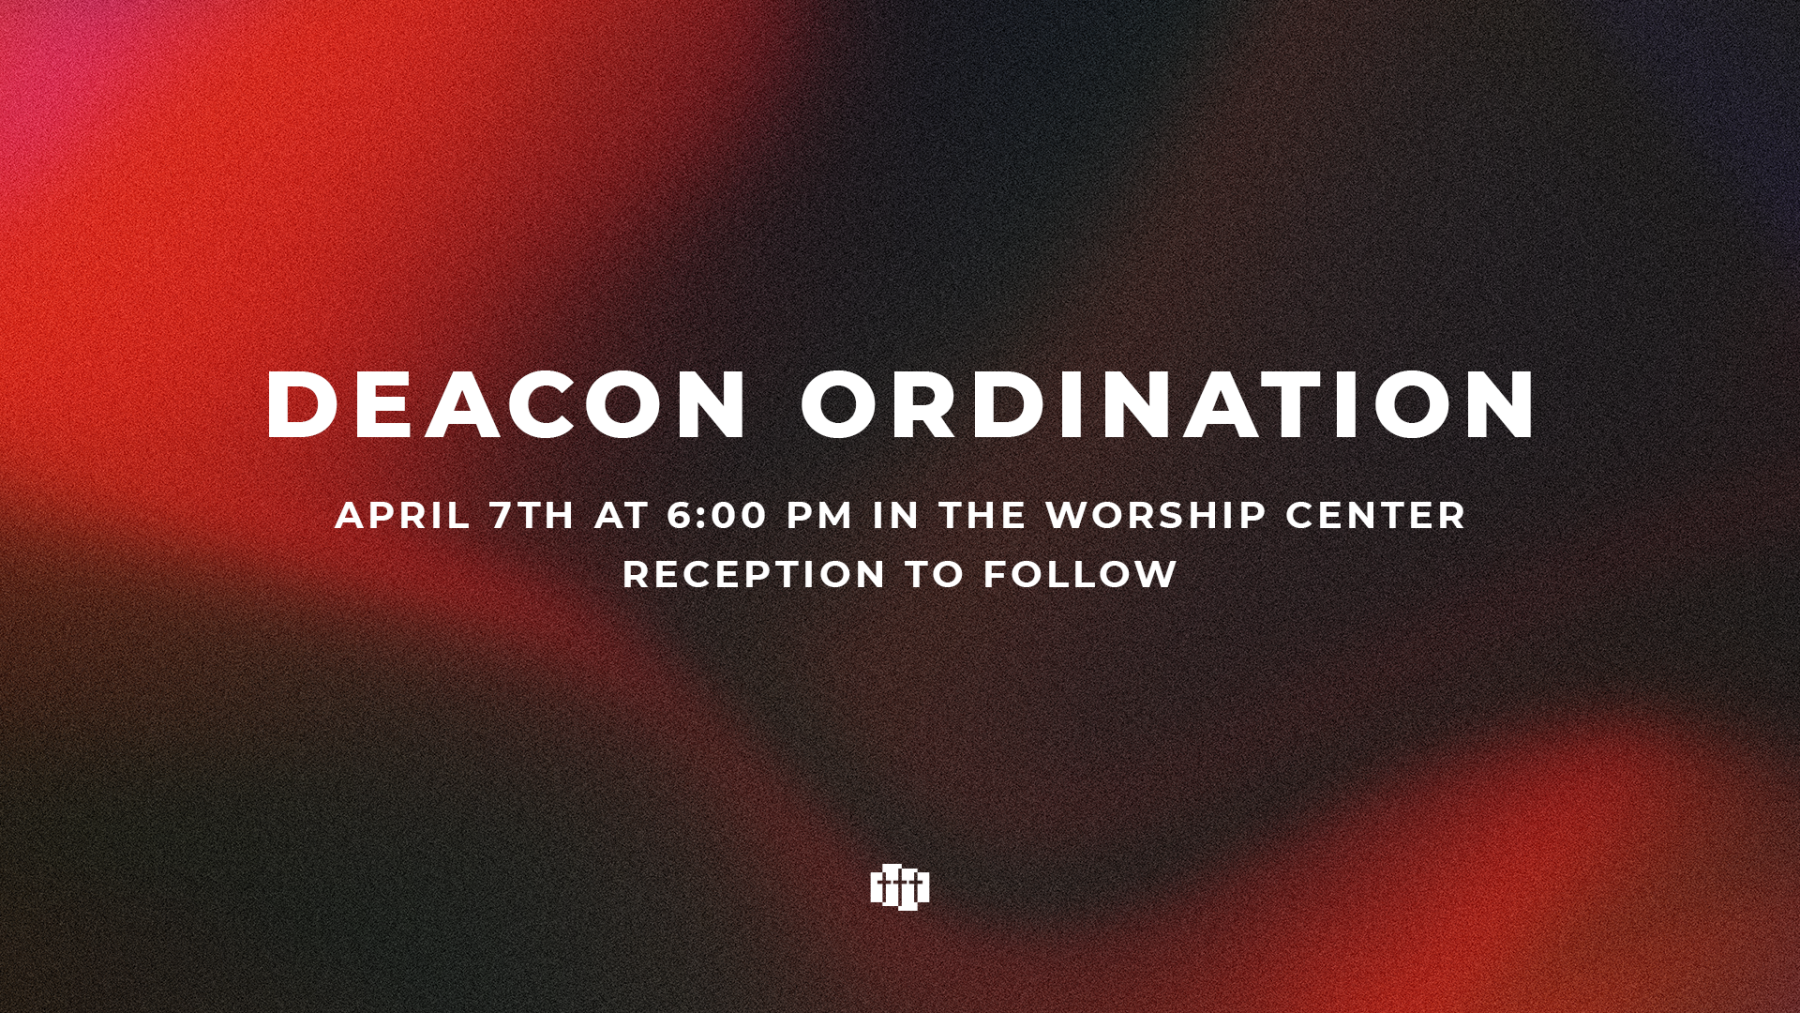 Deacon Ordination/Fellowship 